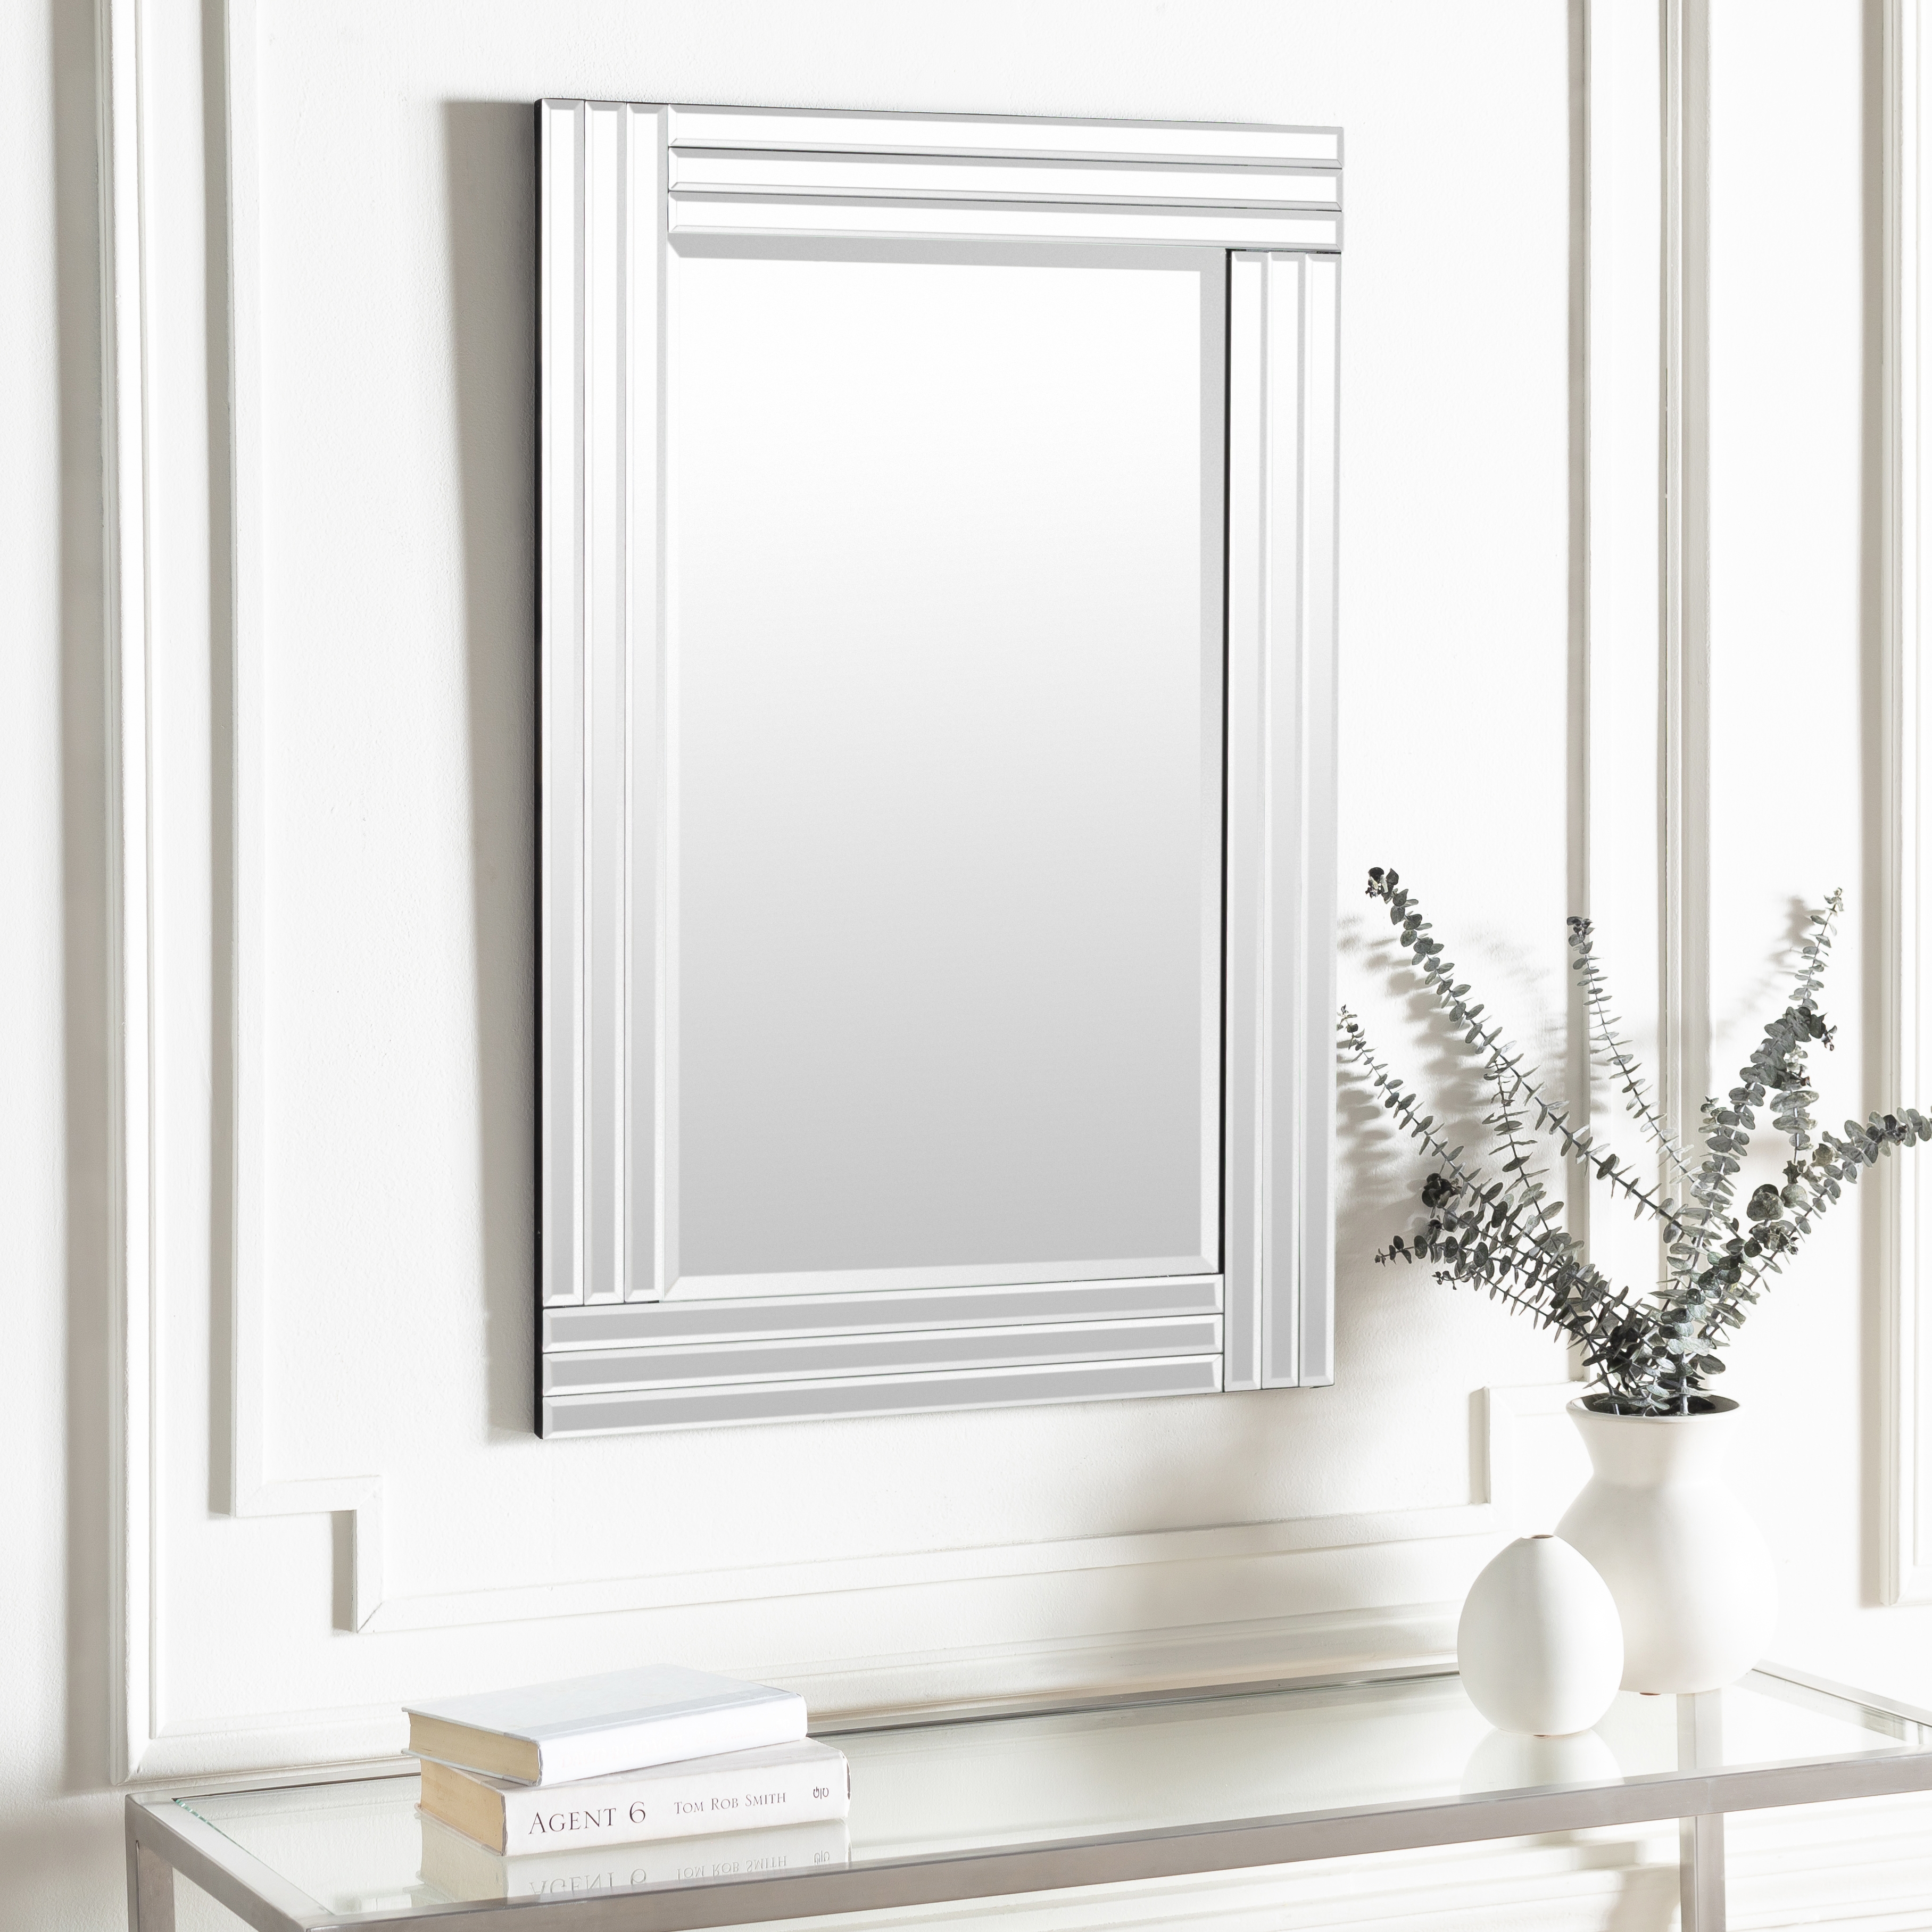 Seymore Mirror, 36"H x 24"W x 2"D - Image 1